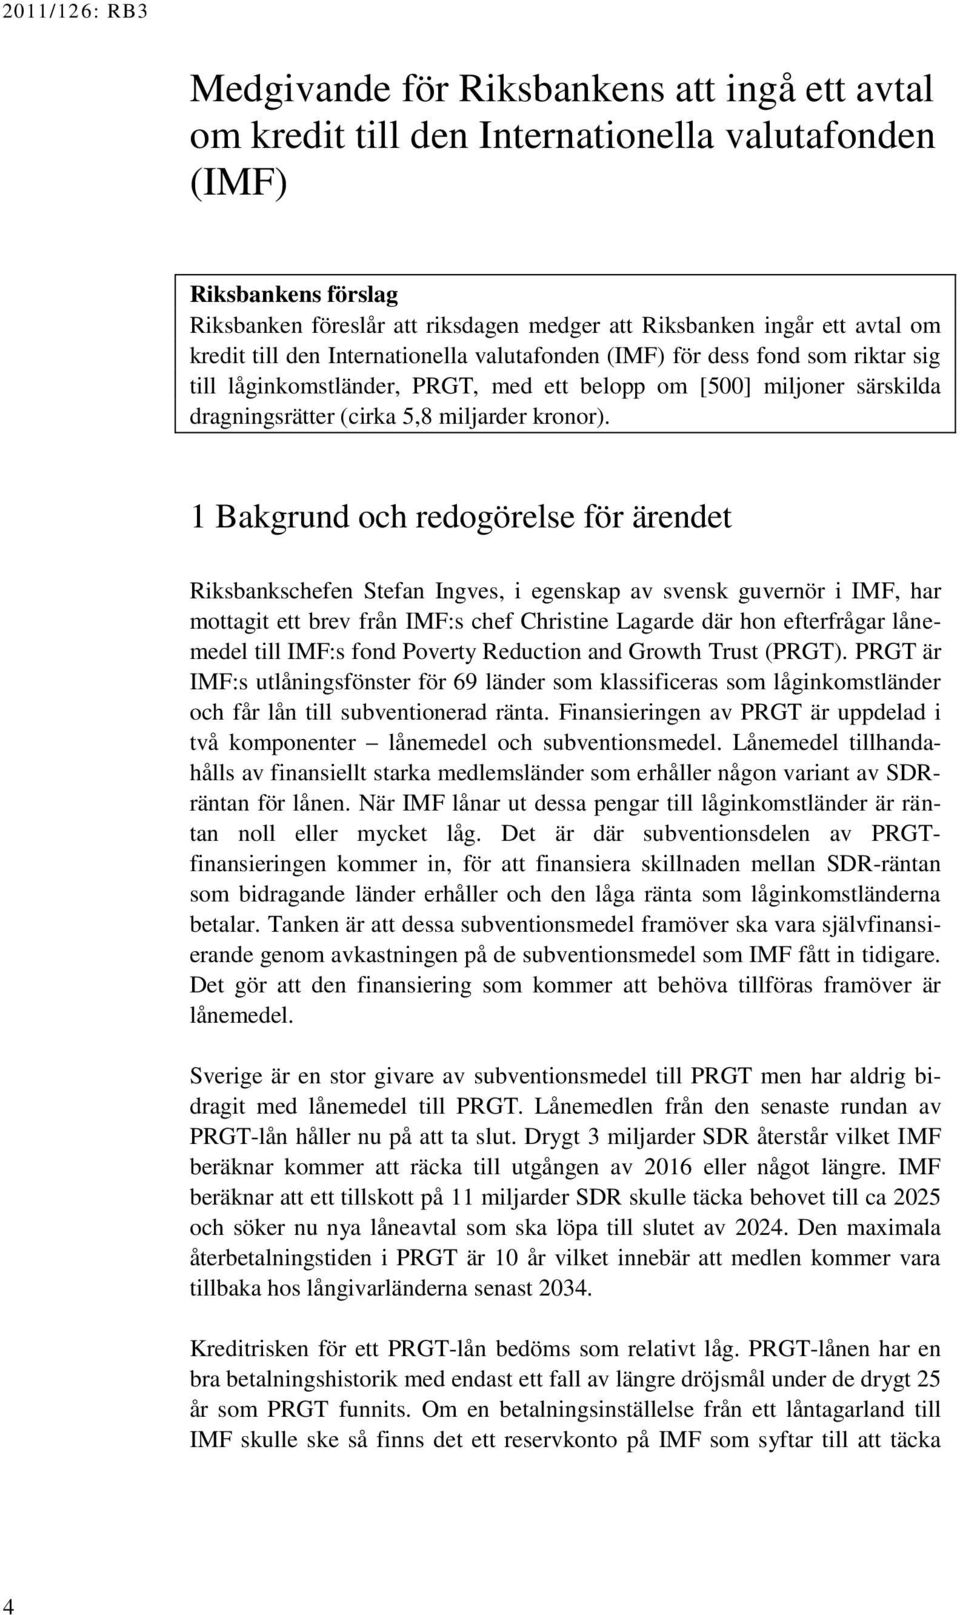 1 Bakgrund och redogörelse för ärendet Riksbankschefen Stefan Ingves, i egenskap av svensk guvernör i IMF, har mottagit ett brev från IMF:s chef Christine Lagarde där hon efterfrågar lånemedel till